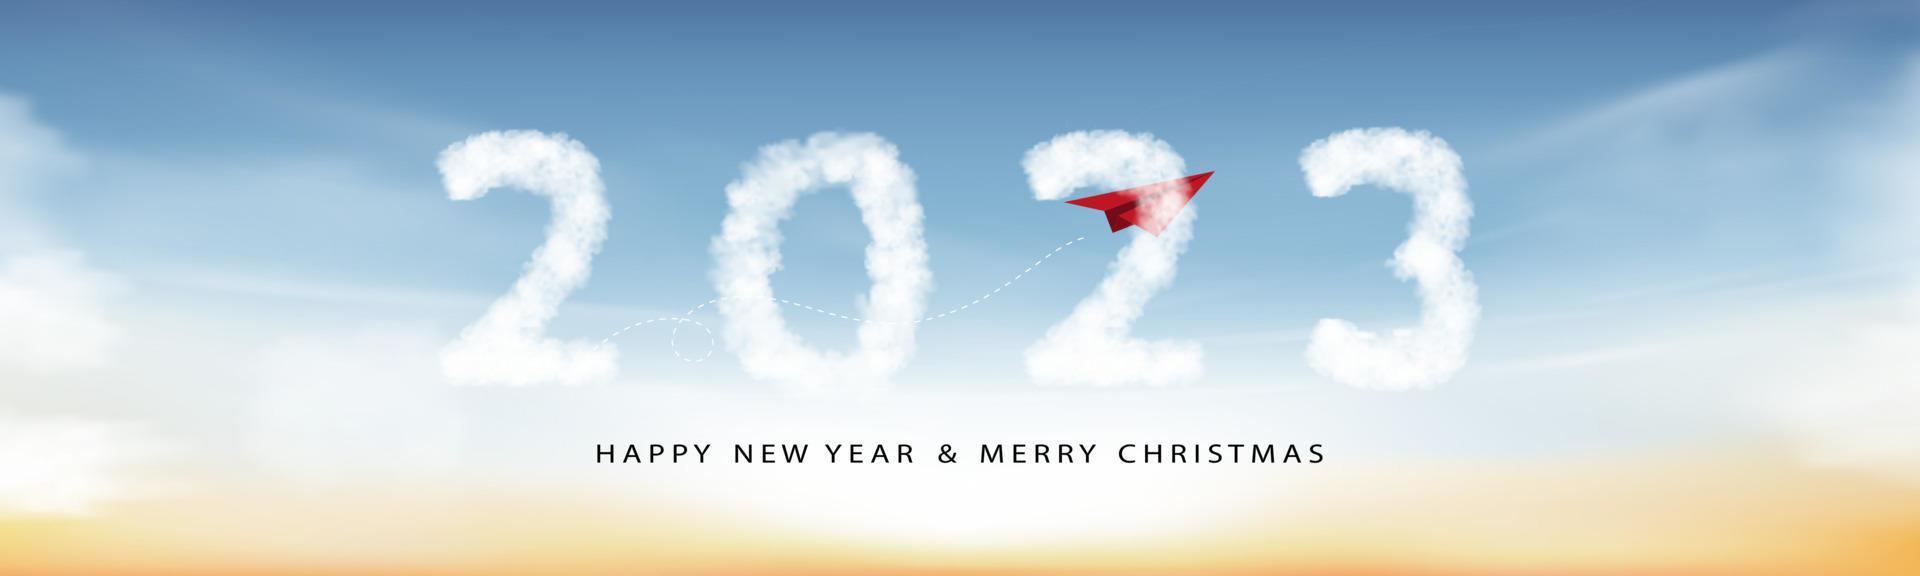 2023 bonne année nuages avec avion en papier rouge volant jusqu'au ciel, texte d'illustration vectorielle horizon 2023 sur fond bleu pour le calendrier, conception de bannière large pour le nouvel an ou les vacances de noël vecteur